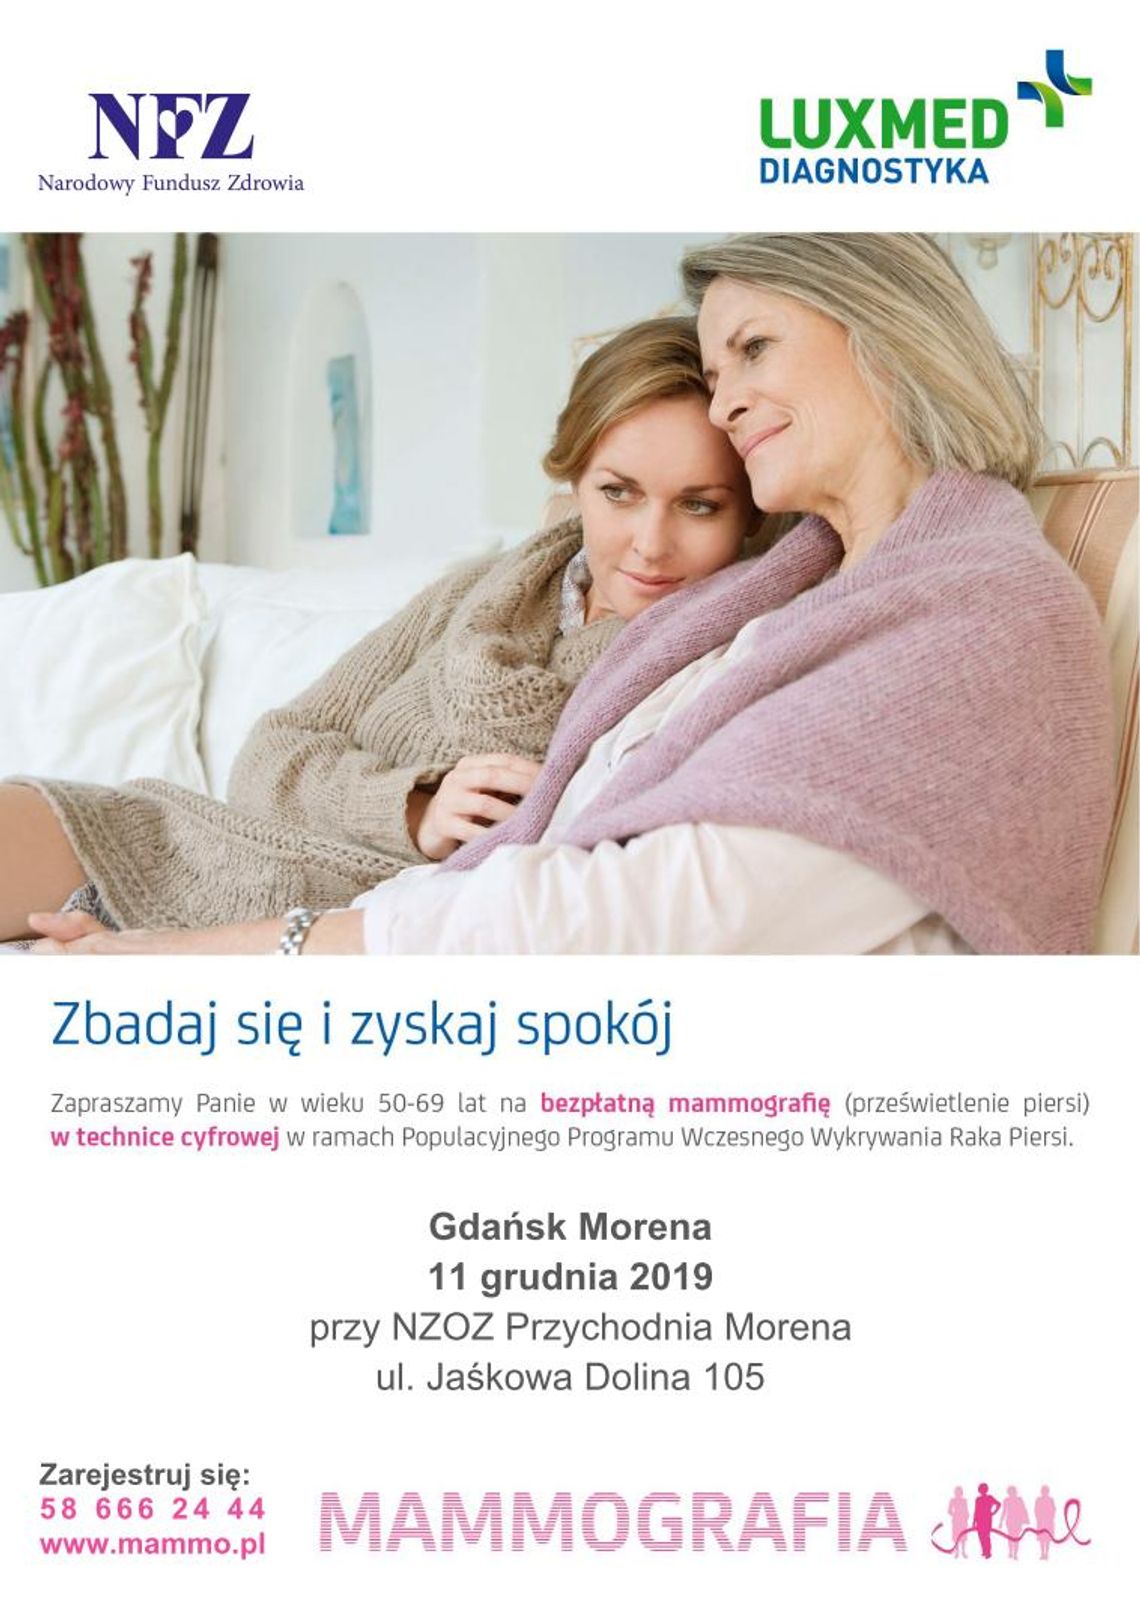 Bezpłatne badania mammograficzne w Gdańsku Morenie